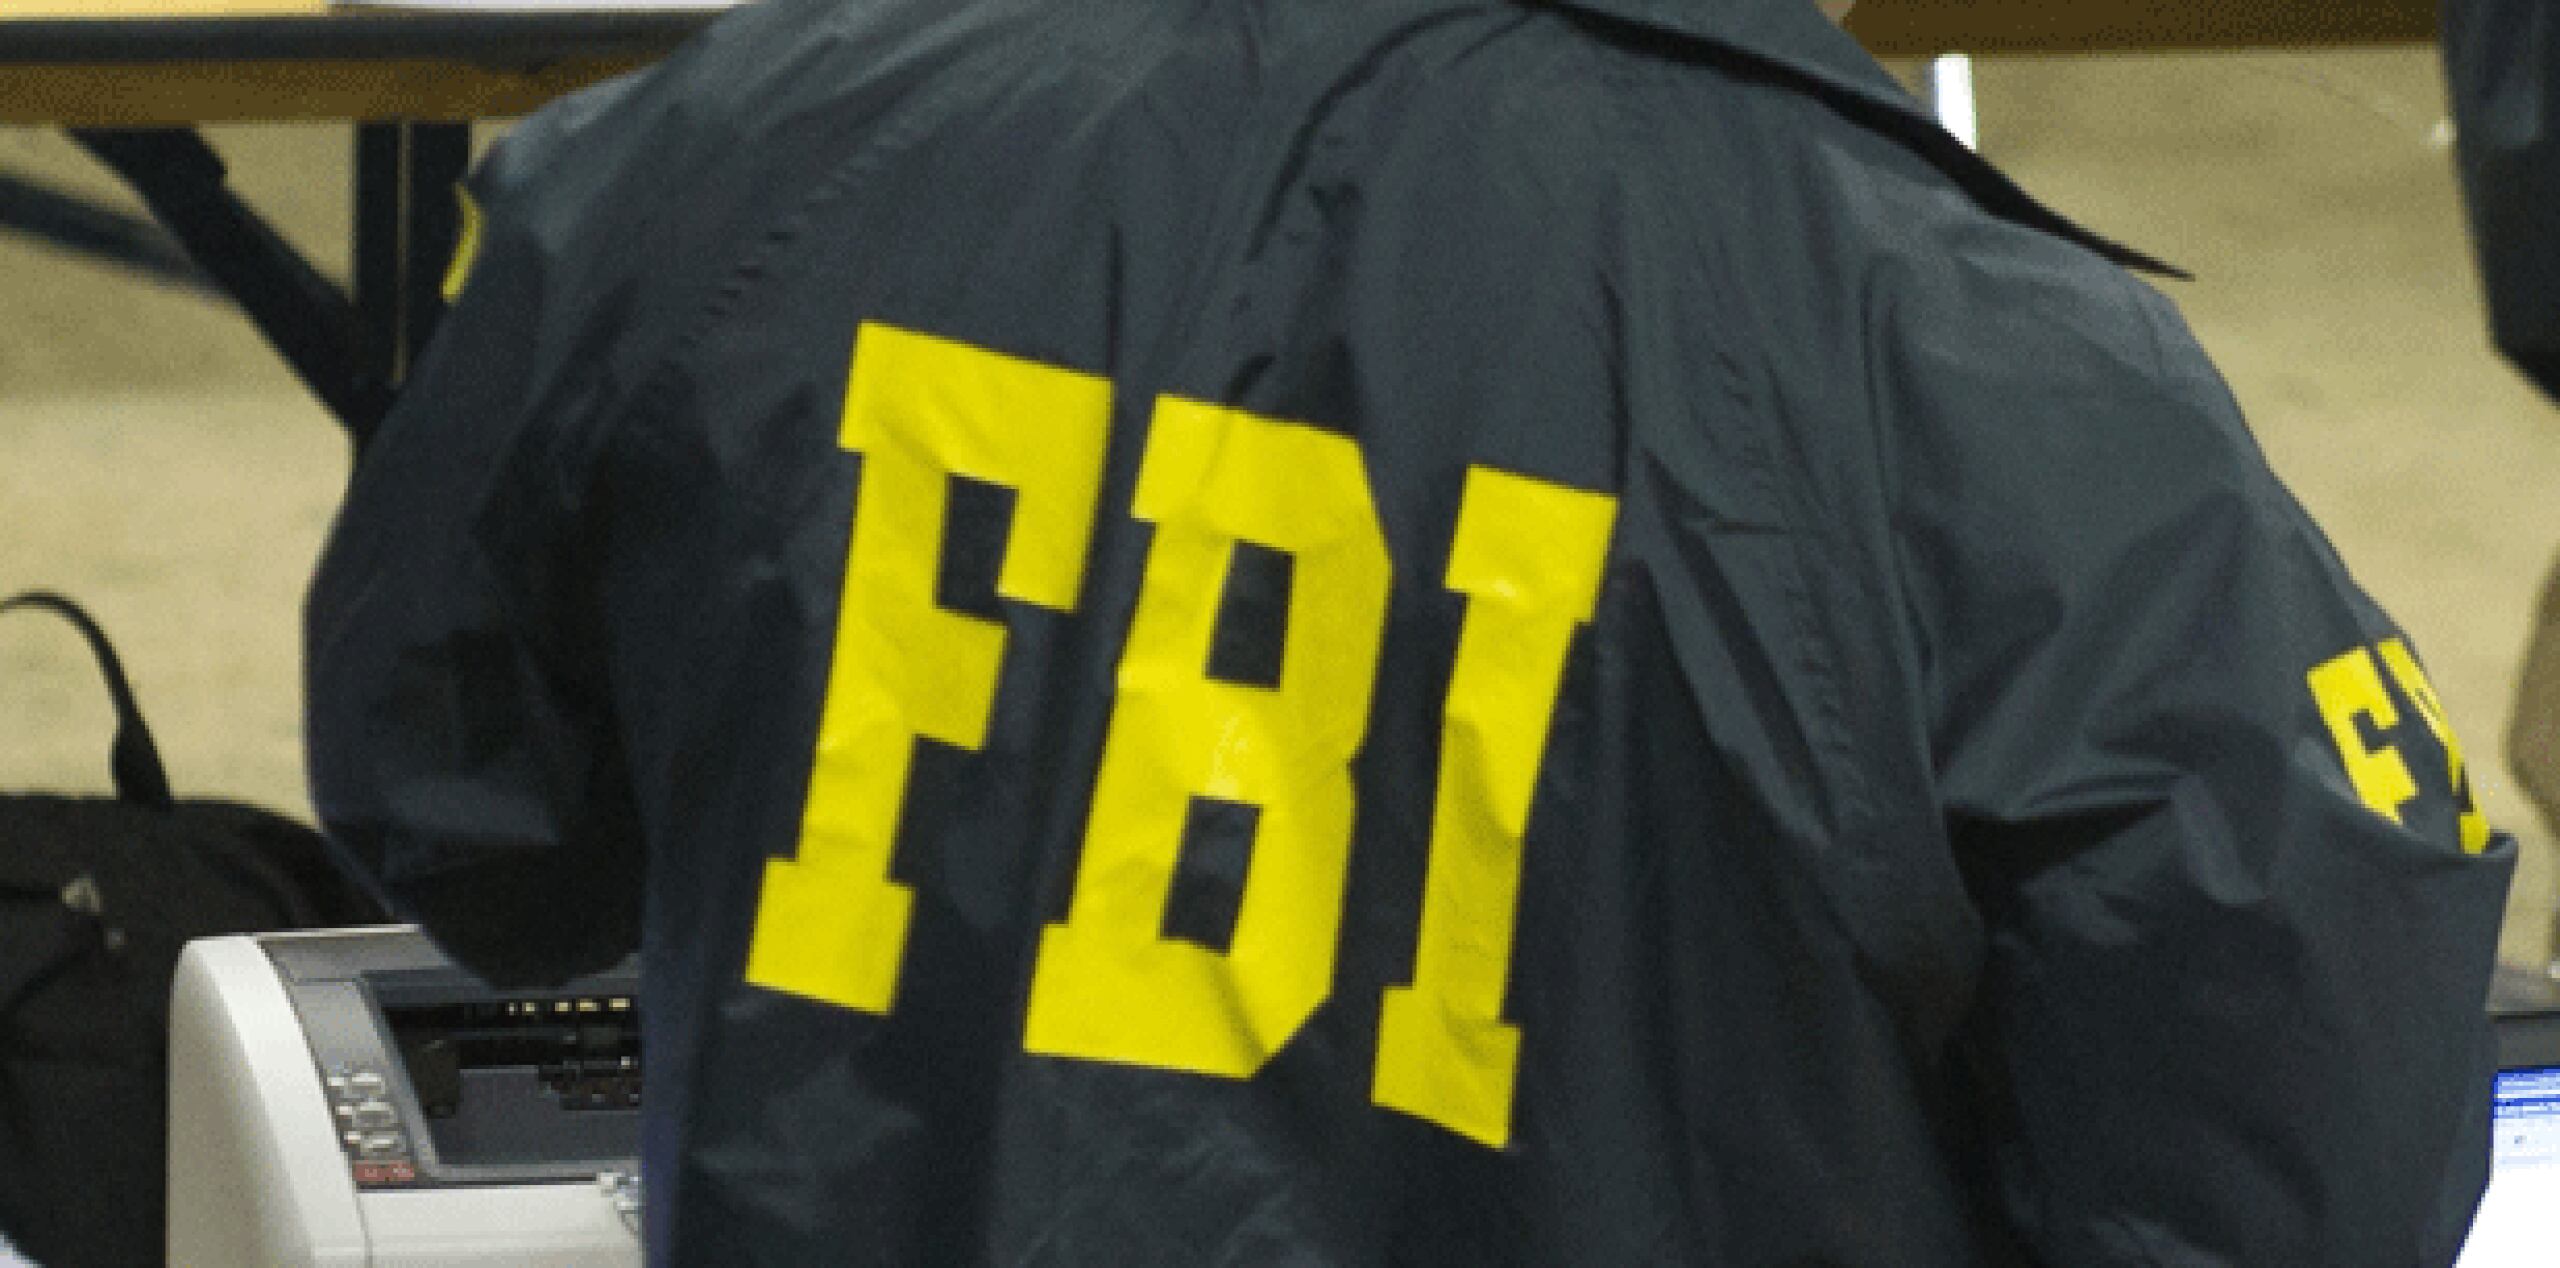 Eccleston fue despedido de la NRC en 2010 y, tras abandonar la agencia gubernamental, se dirigió a una embajada de un país sin identificar y propuso proveerles de información clasificada que había obtenido del Gobierno de EE.UU., lo que levantó las sospechas del FBI. (Archivo)